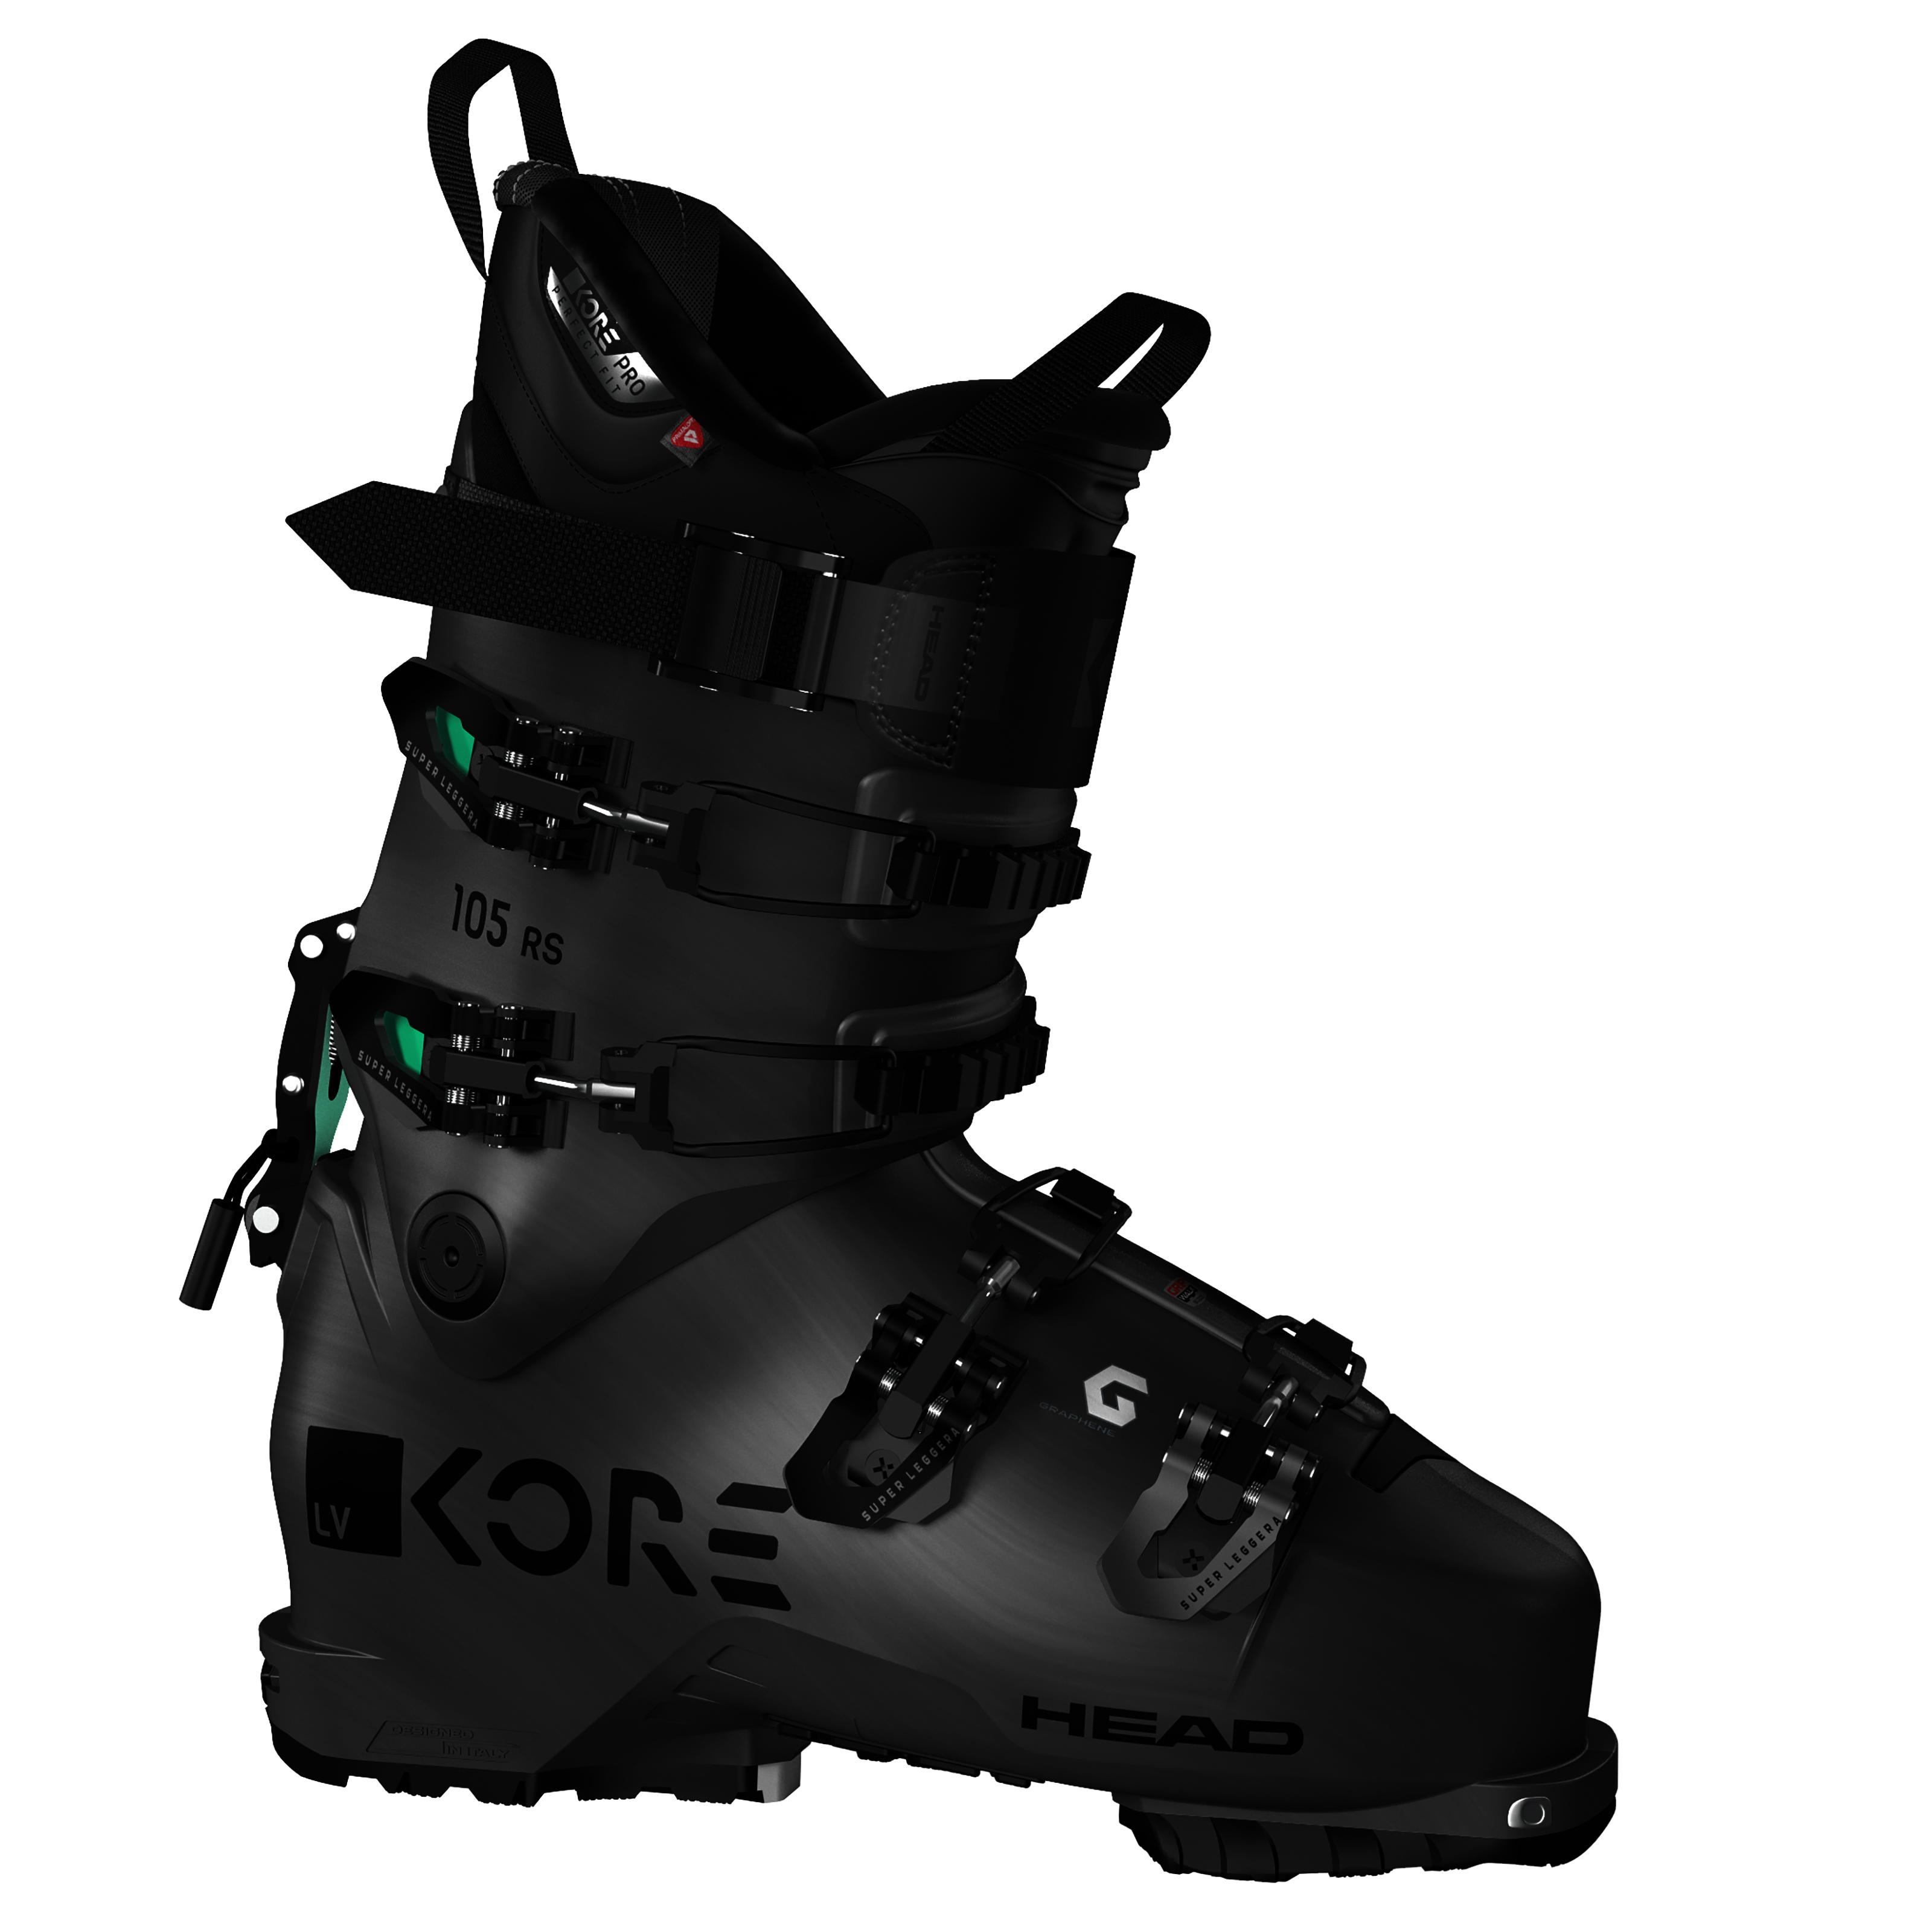 Head Kore RS 105 Wms Ski Boot